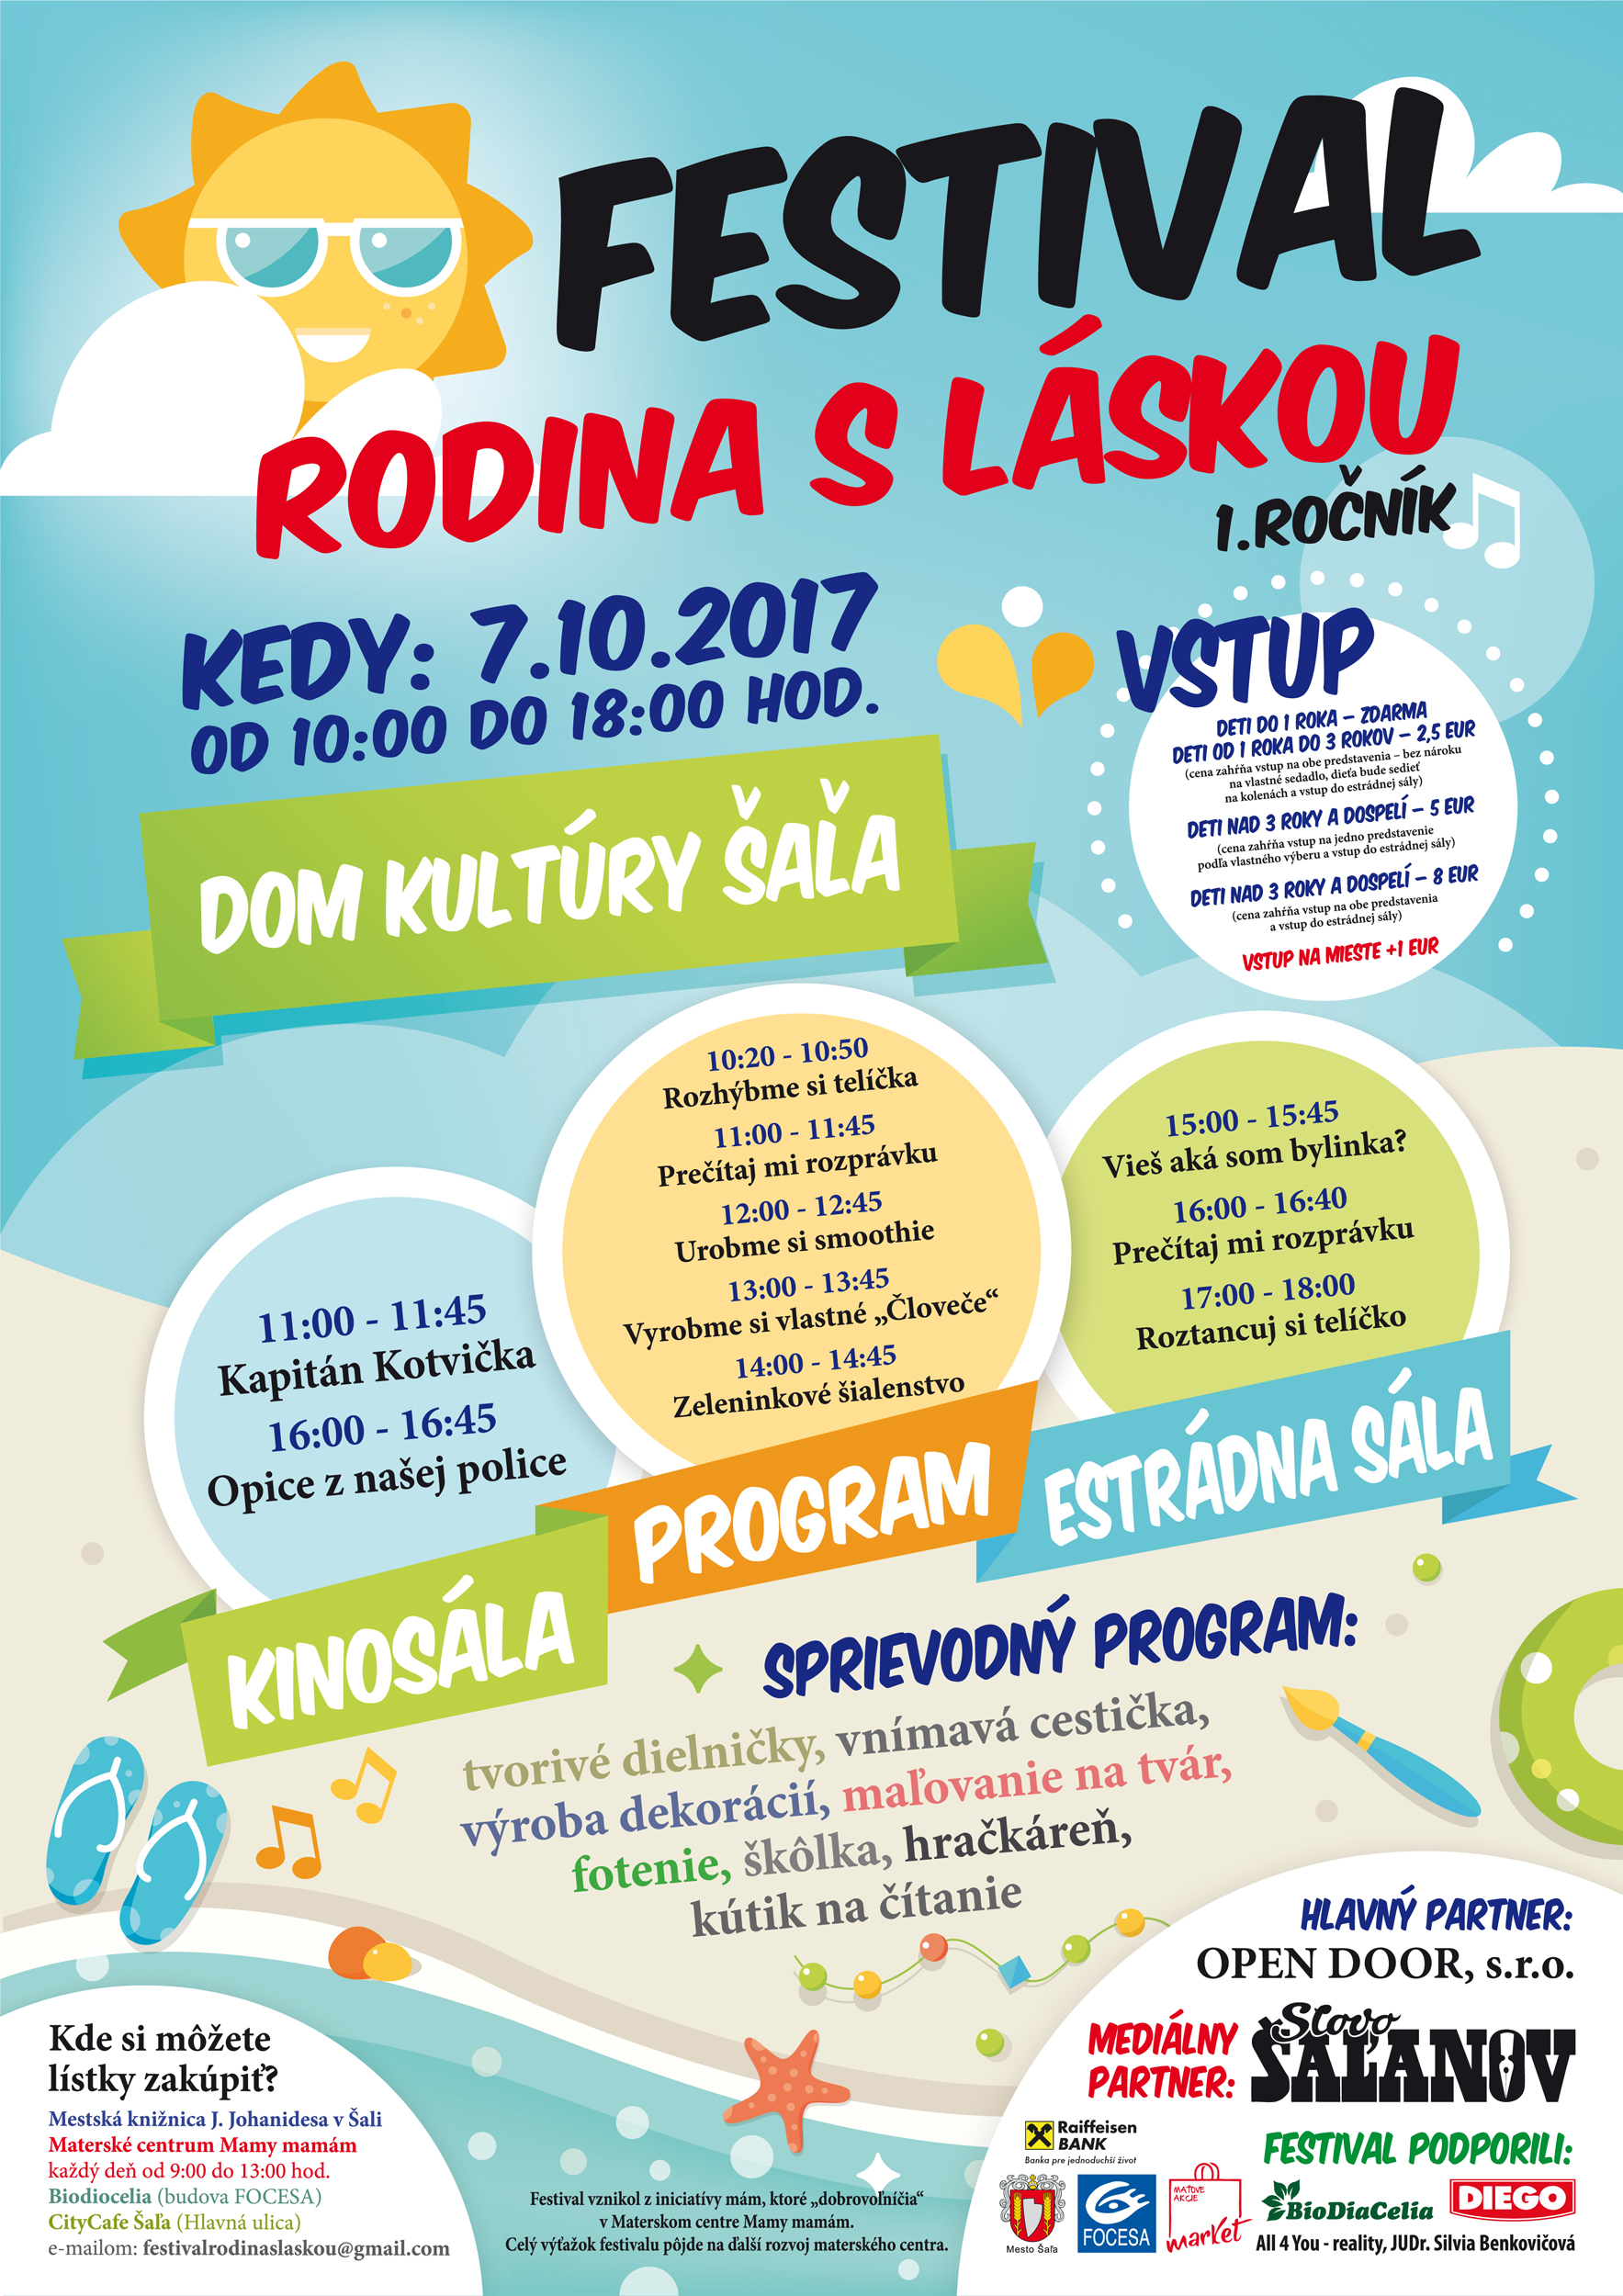 Festival Rodina s lskou aa  2017